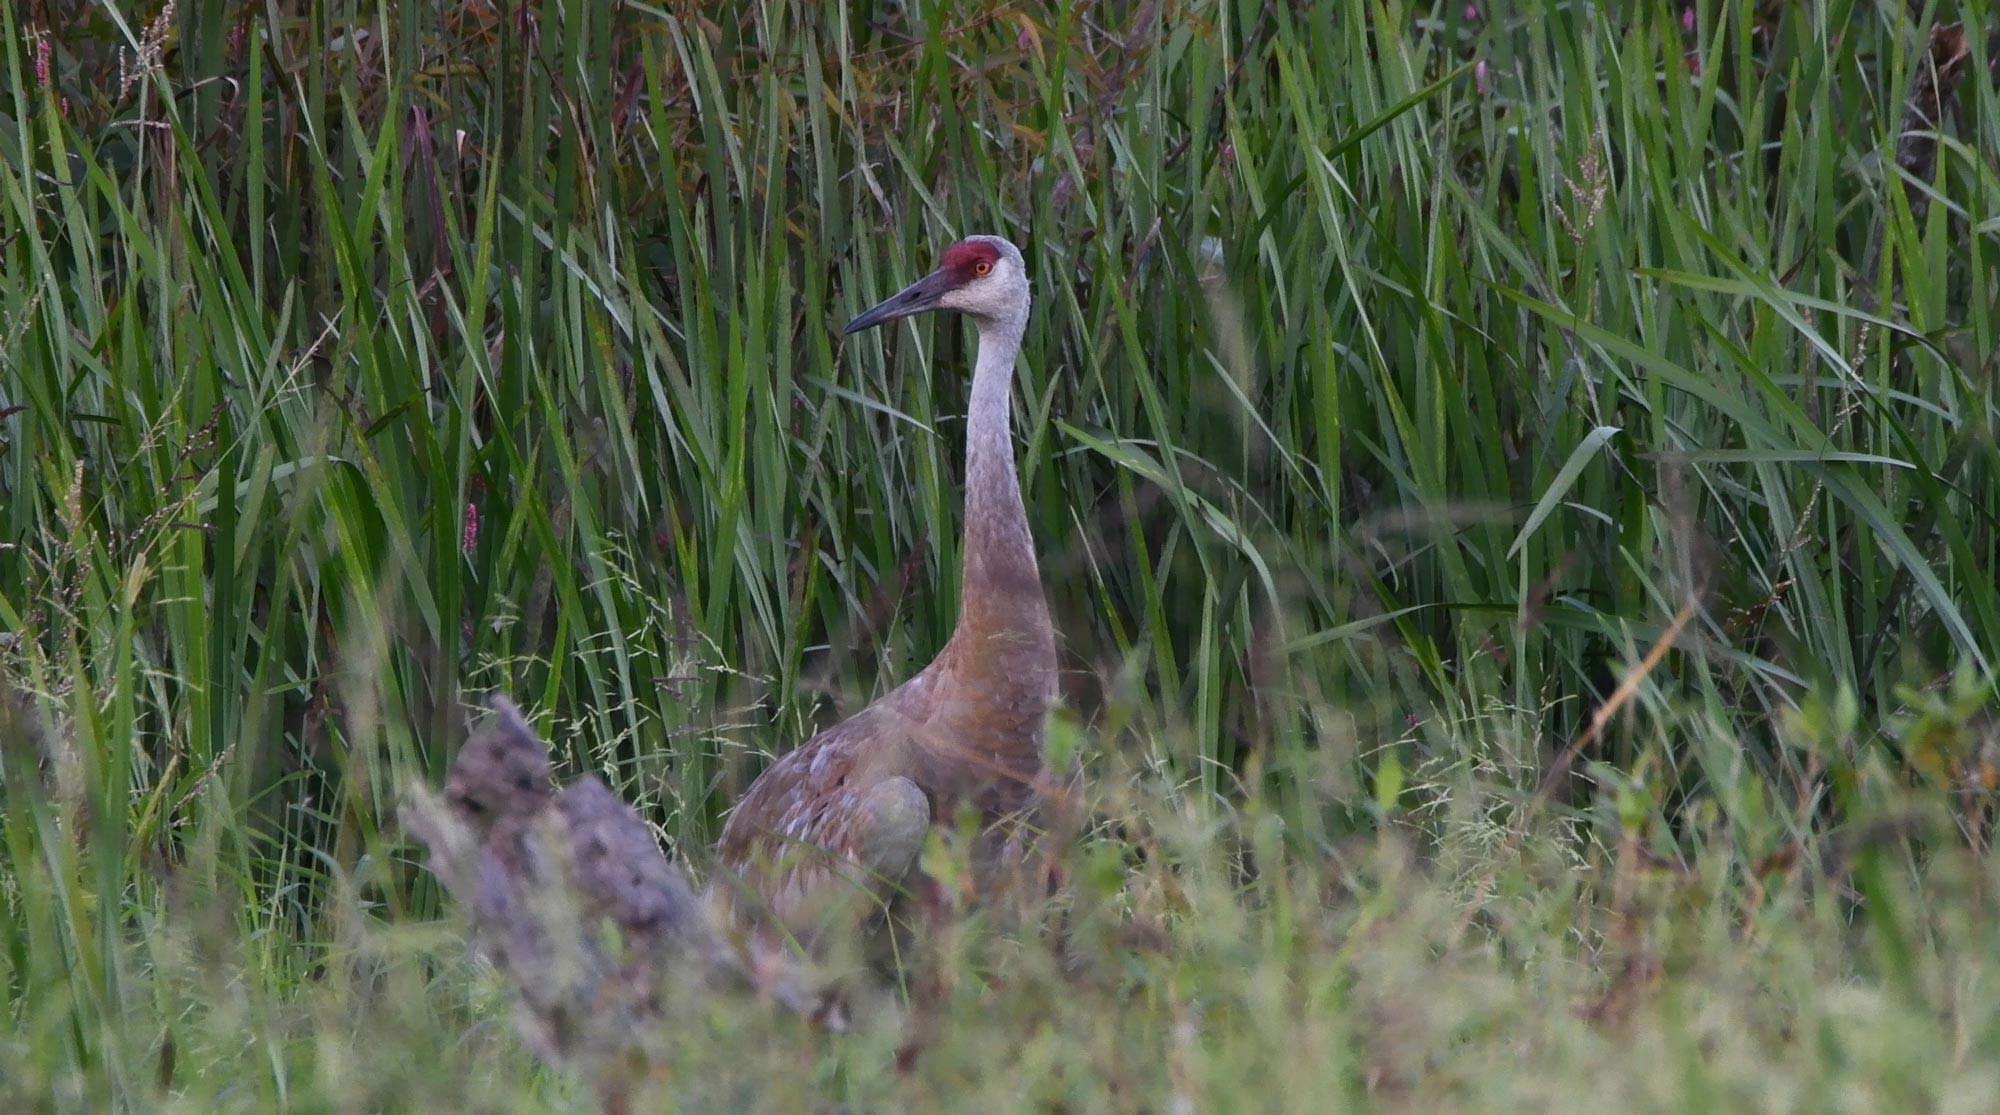 A sandhill crane standing in a field.